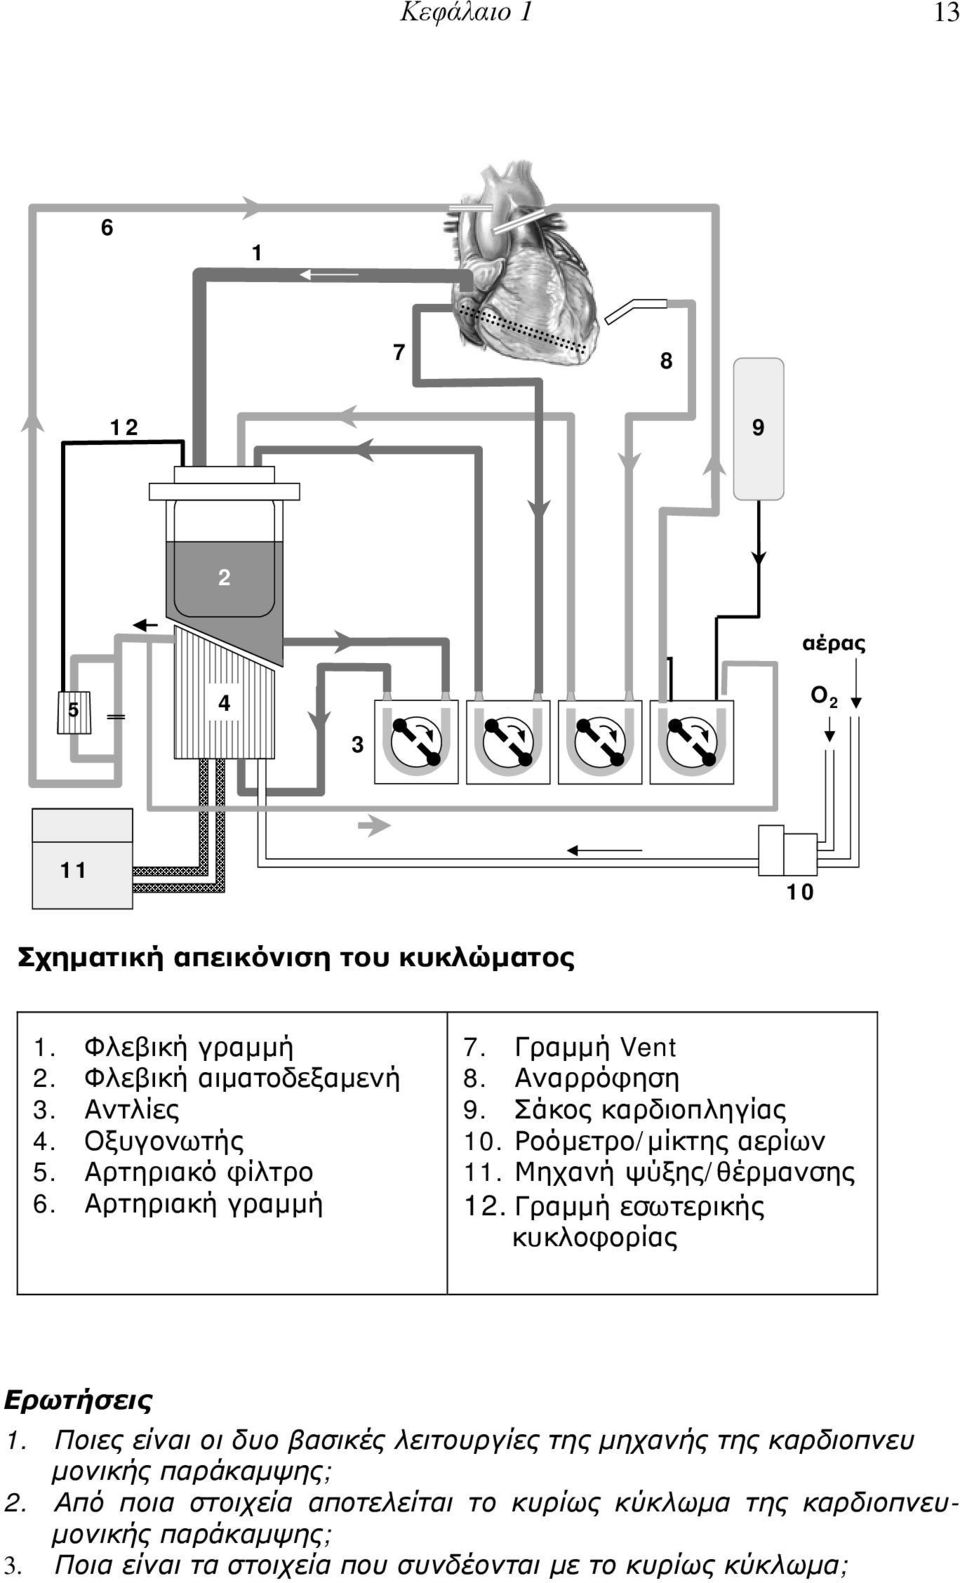 Μηχανή ψύξης/θέρμανσης 12. Γραμμή εσωτερικής κυκλοφορίας Ερωτήσεις 1.